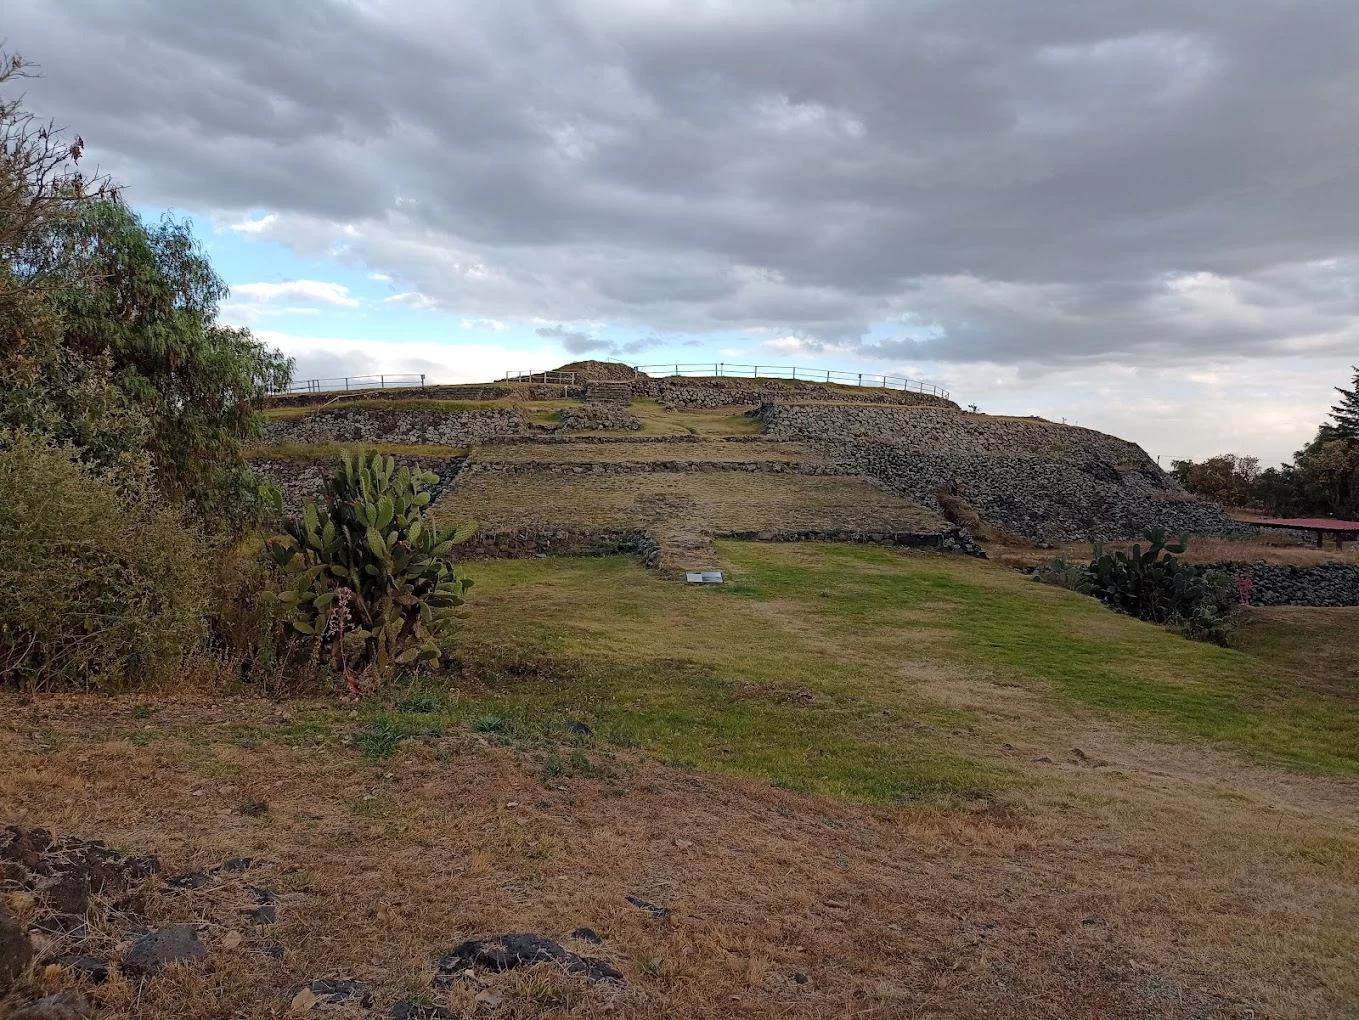 Nota sobre Teotihuacán lugar de dioses